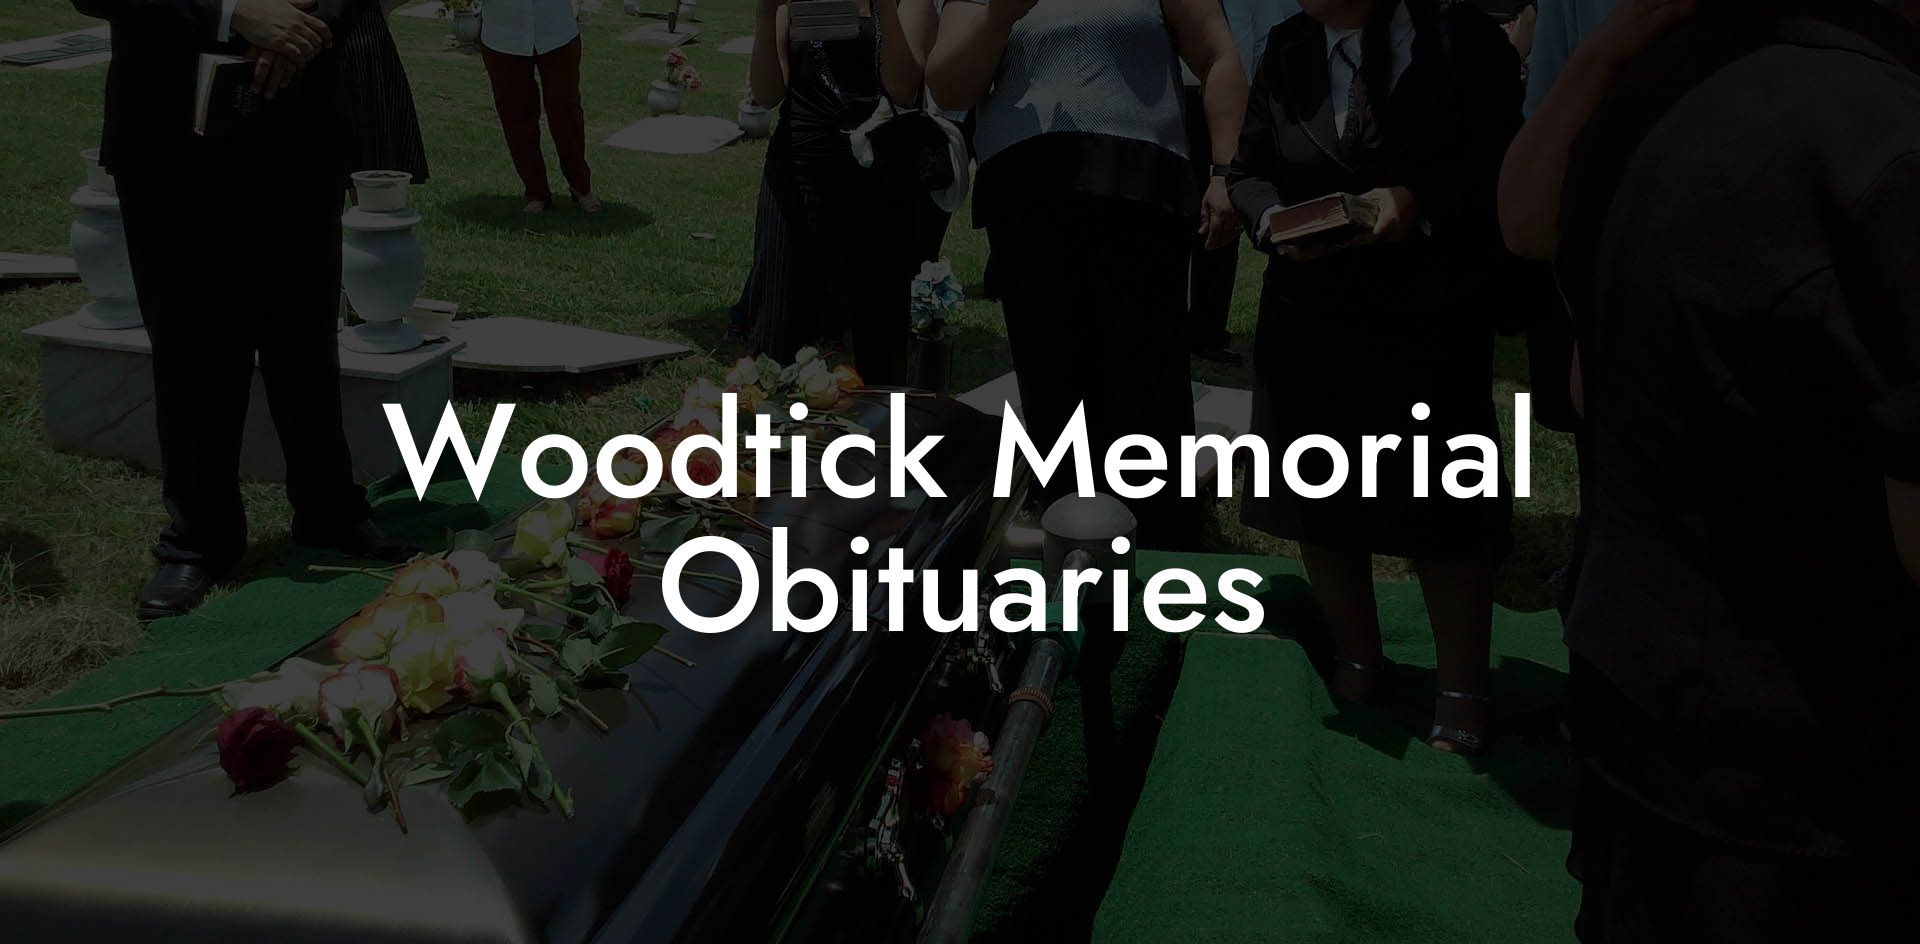 Woodtick Memorial Obituaries